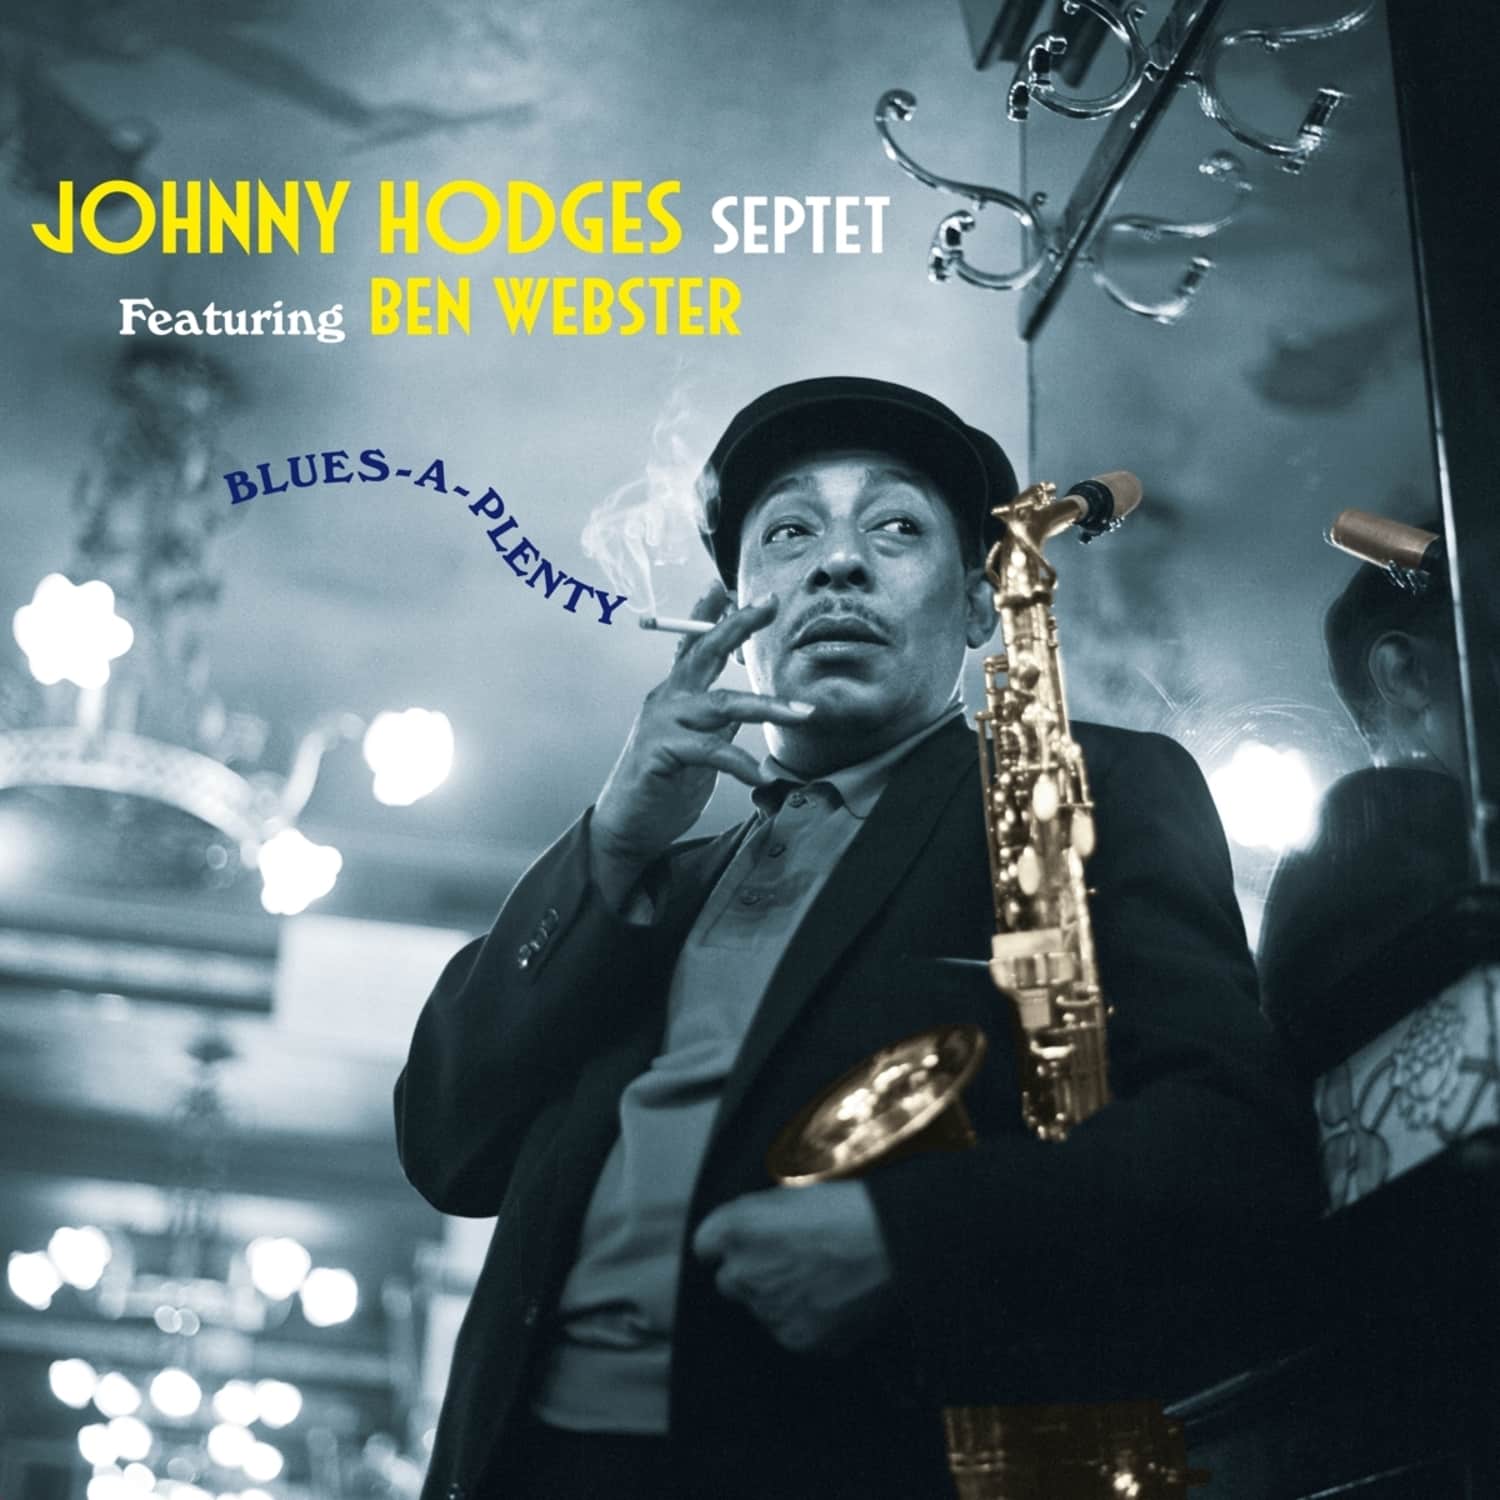 Johnny Hodges - BLUES-A-PLENTY 